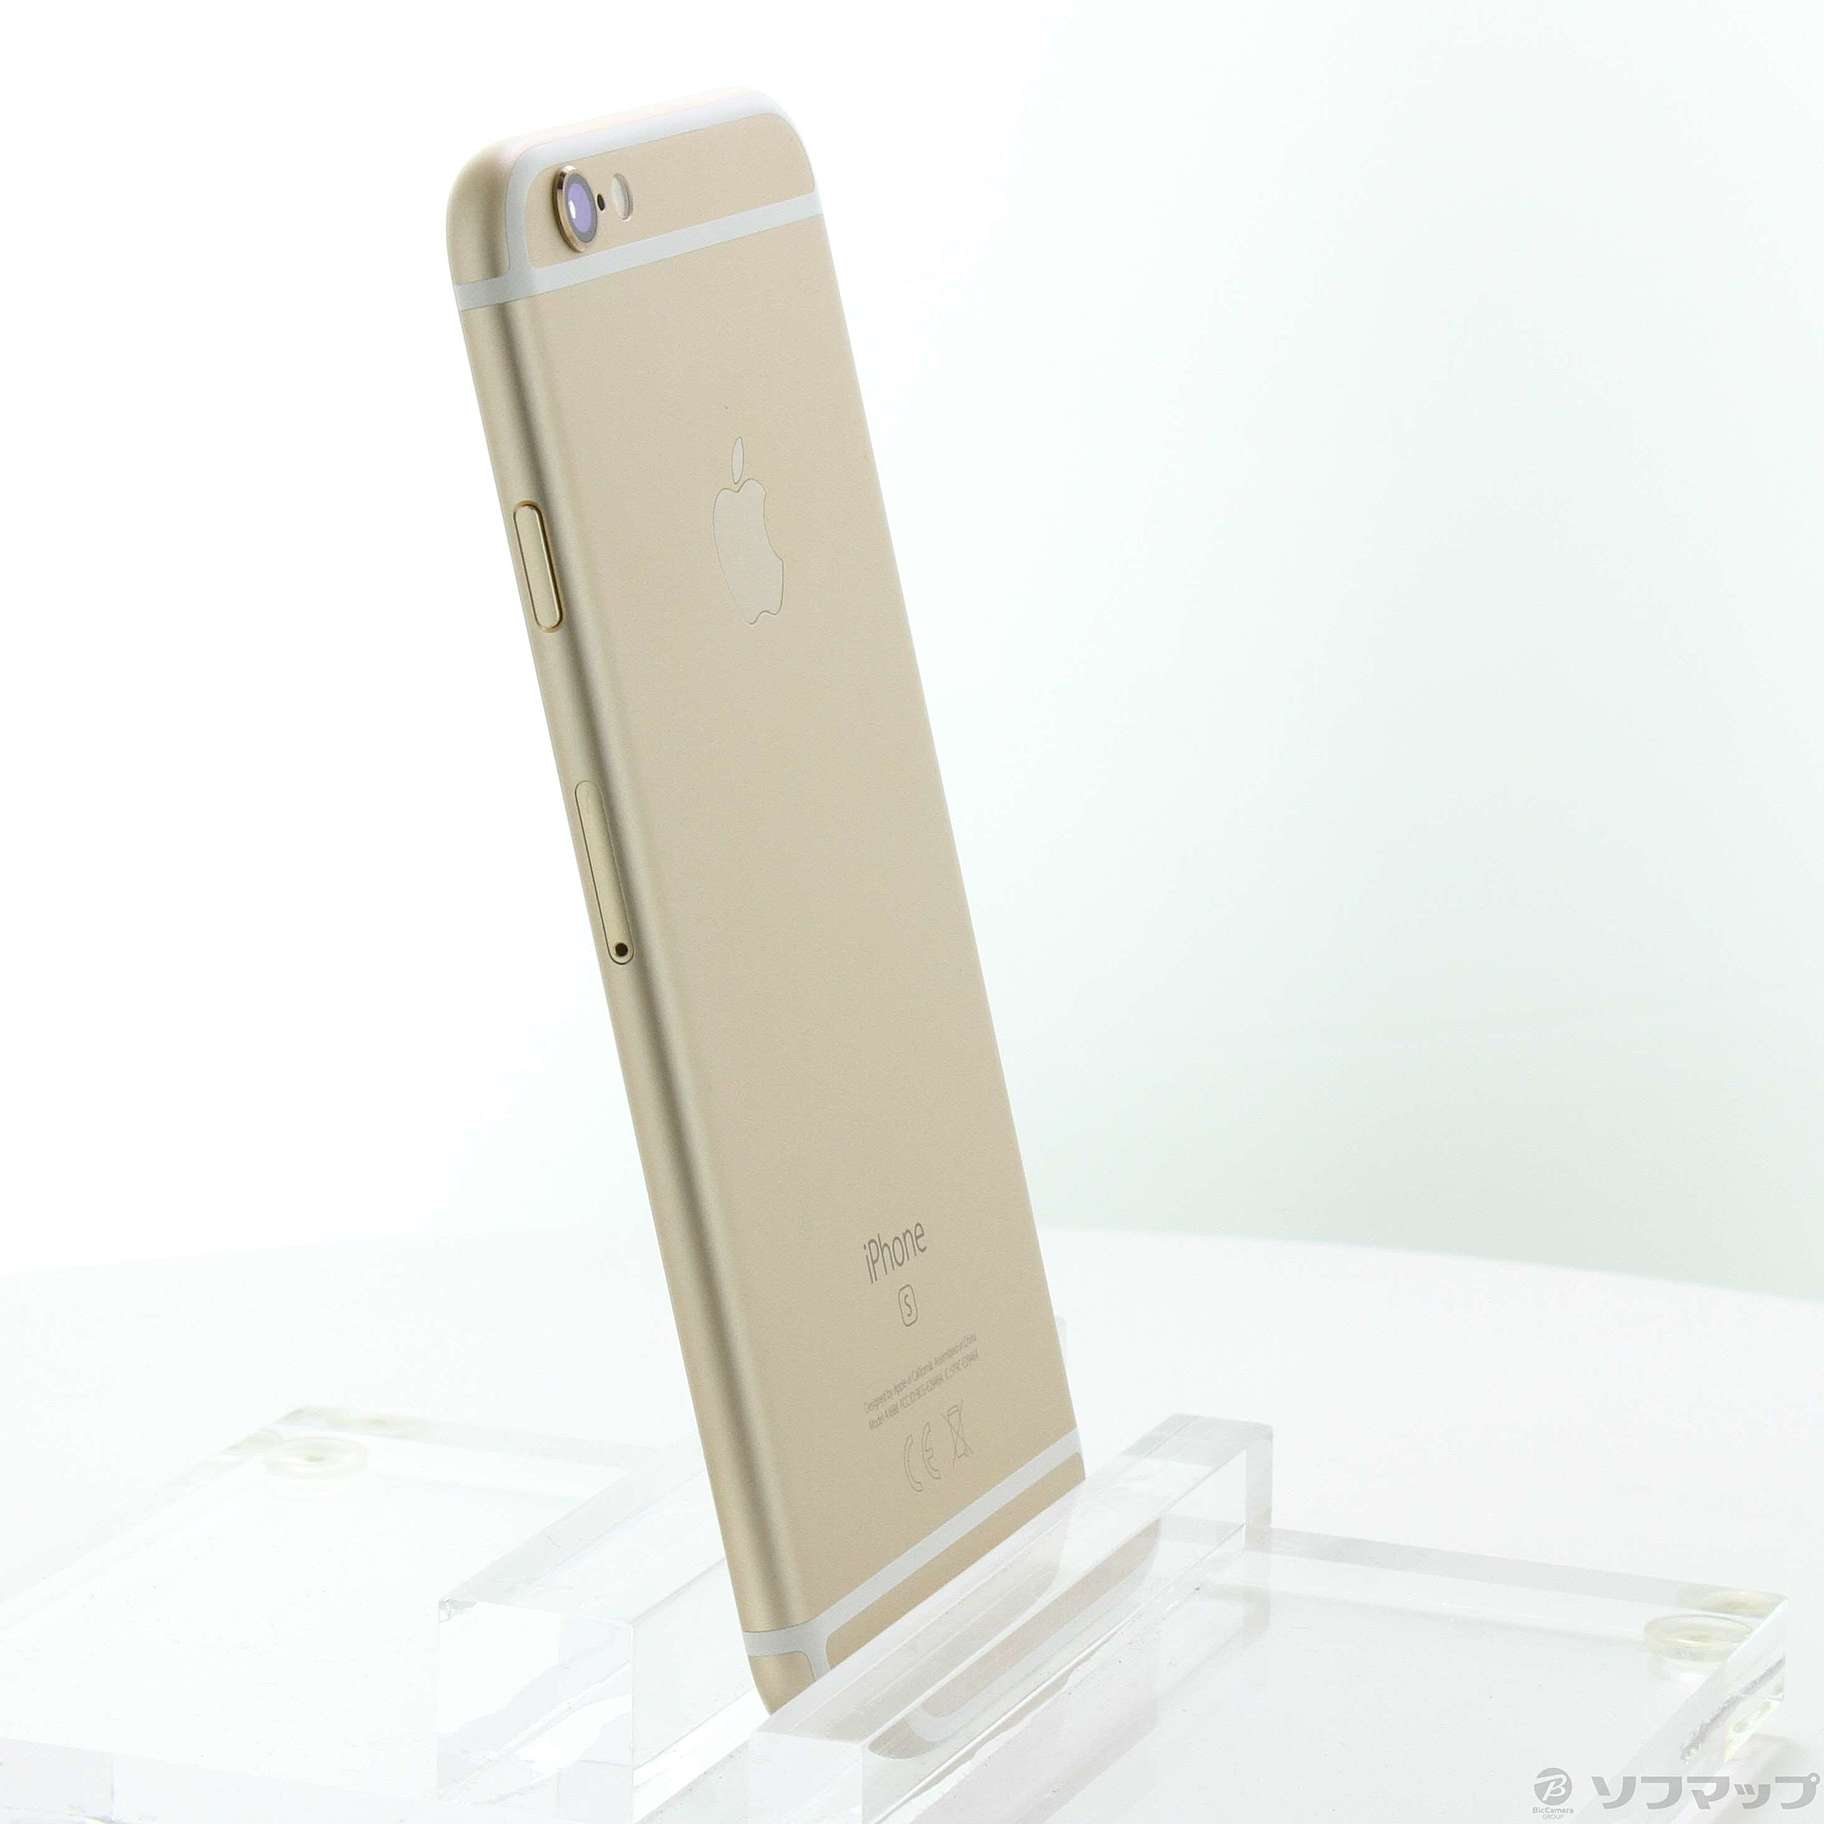 ヒート Apple iPhone6S 32GB ゴールド MN112J/A - スマートフォン本体